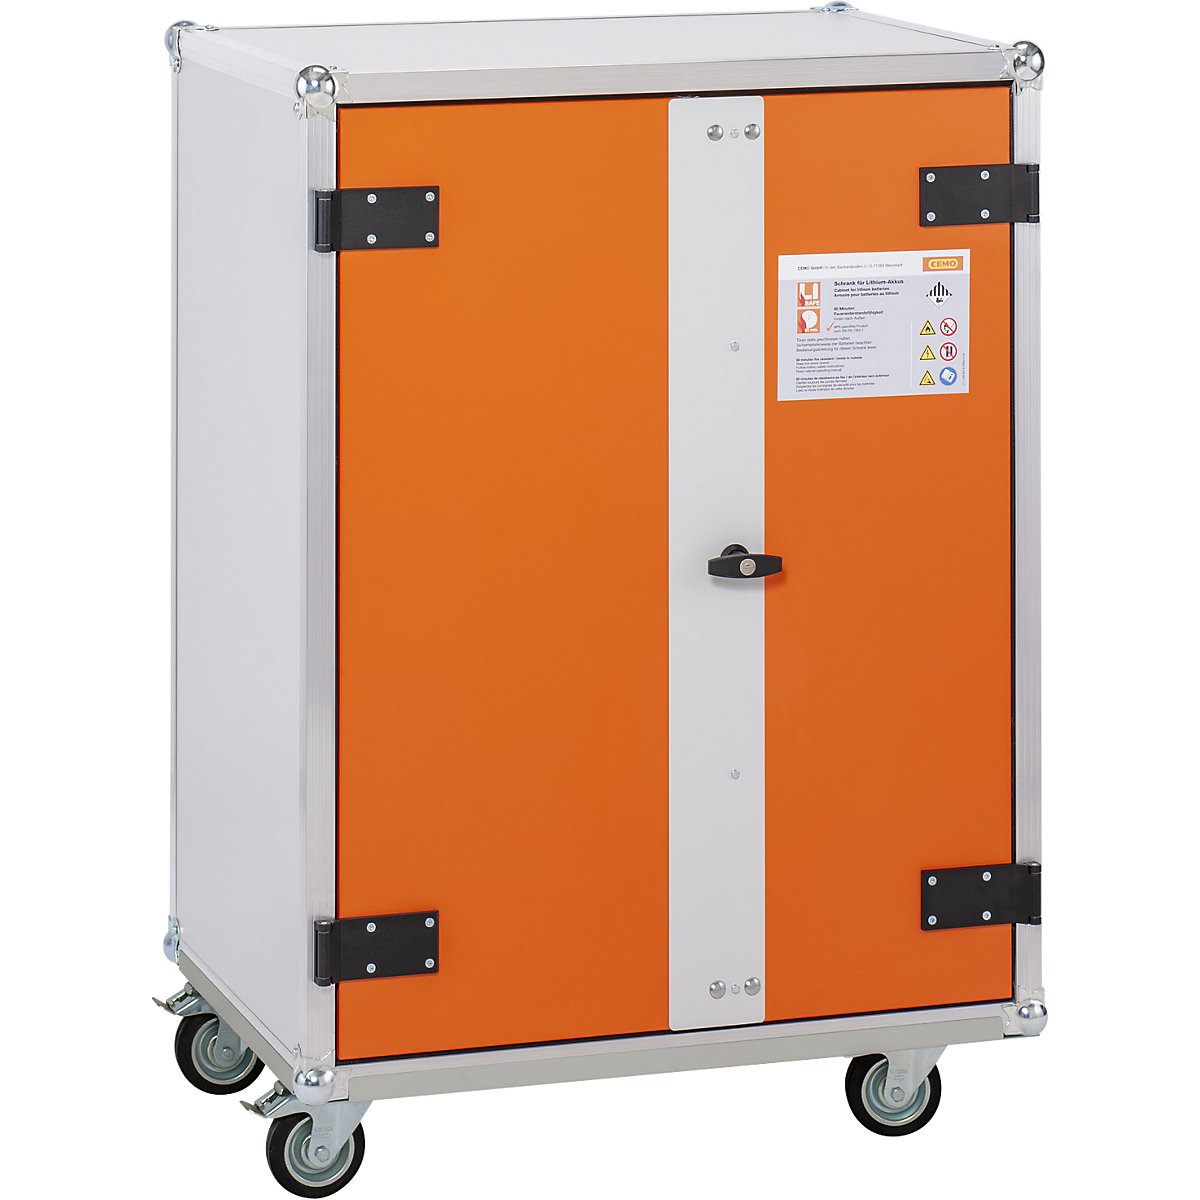 BASIC biztonsági akkumulátortöltő szekrény - CEMO